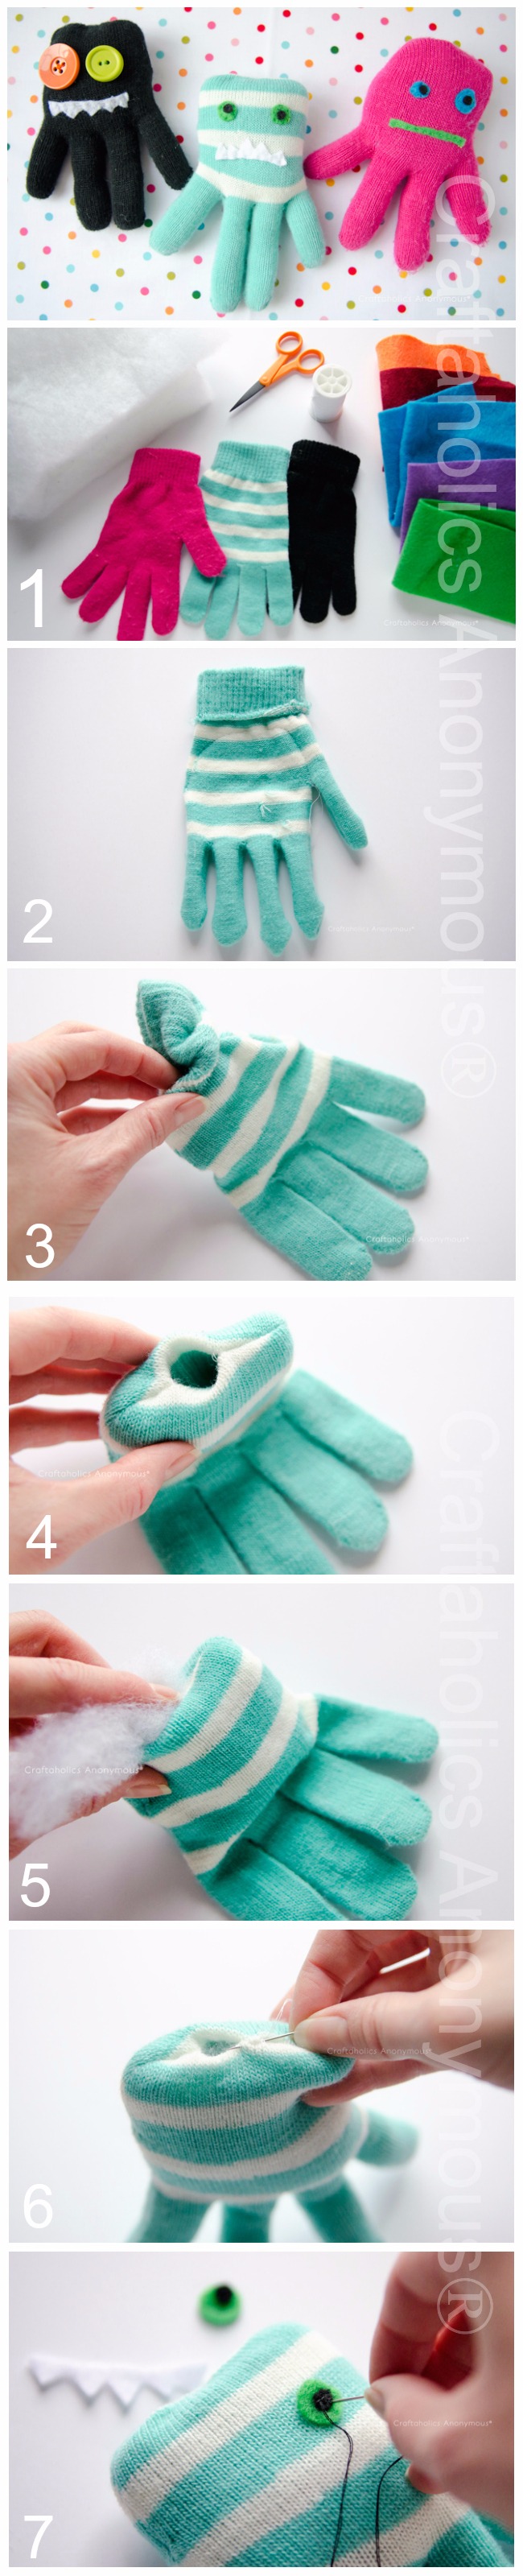 DIY Monsters Glove